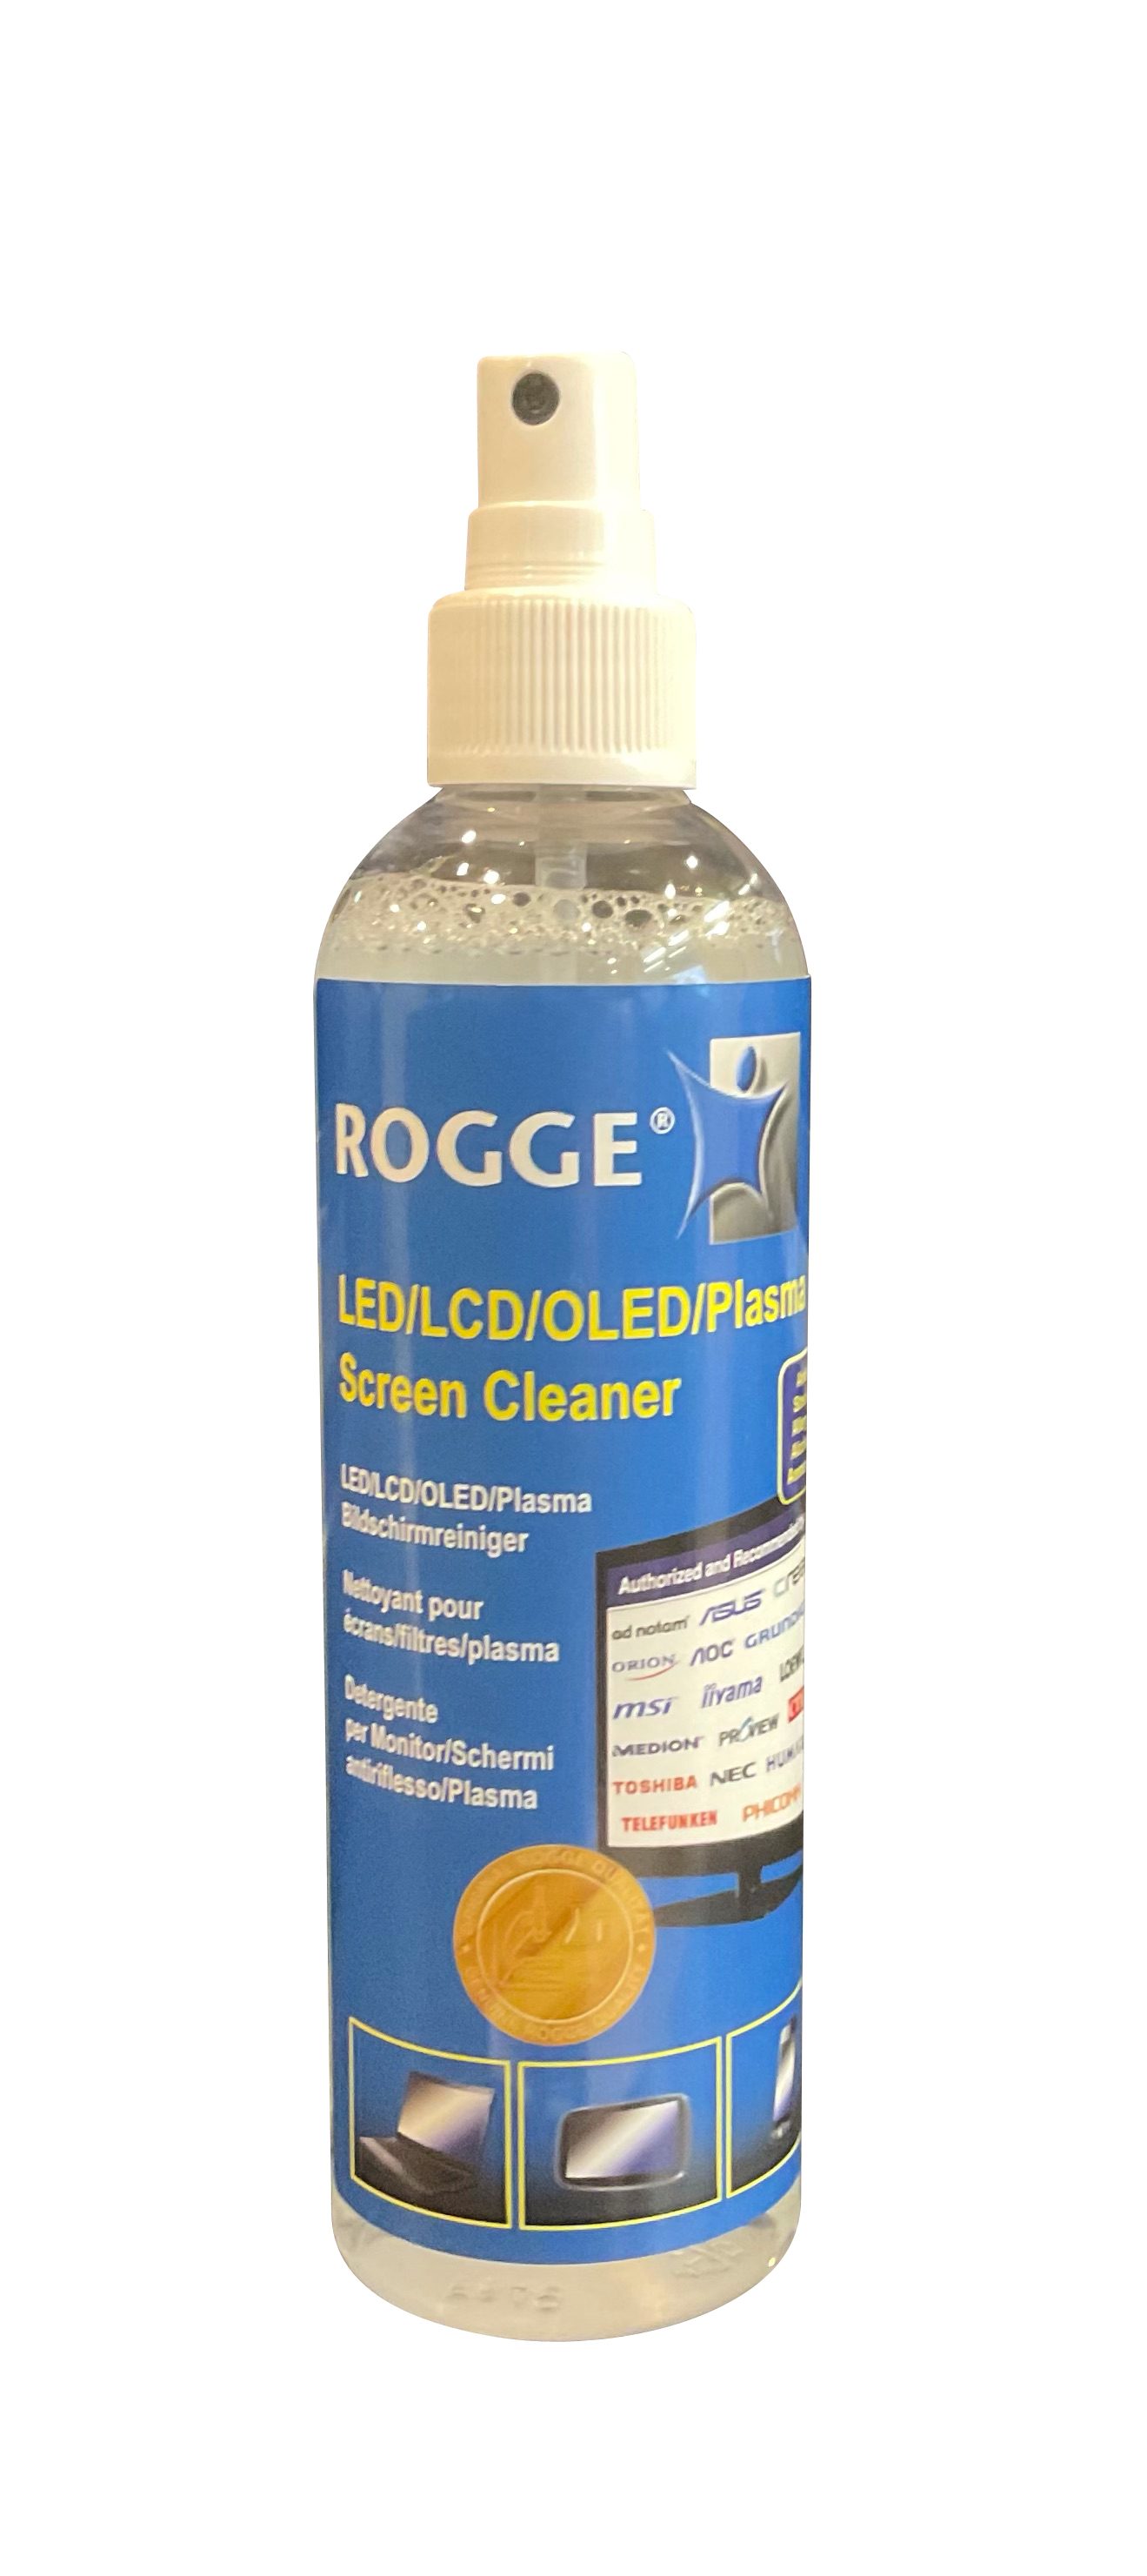 inkl. Rogge 250ml Bildschirmreiniger (2-St) Flüssigreiniger clear - Microfasertuch ROGGE DUO-Clean